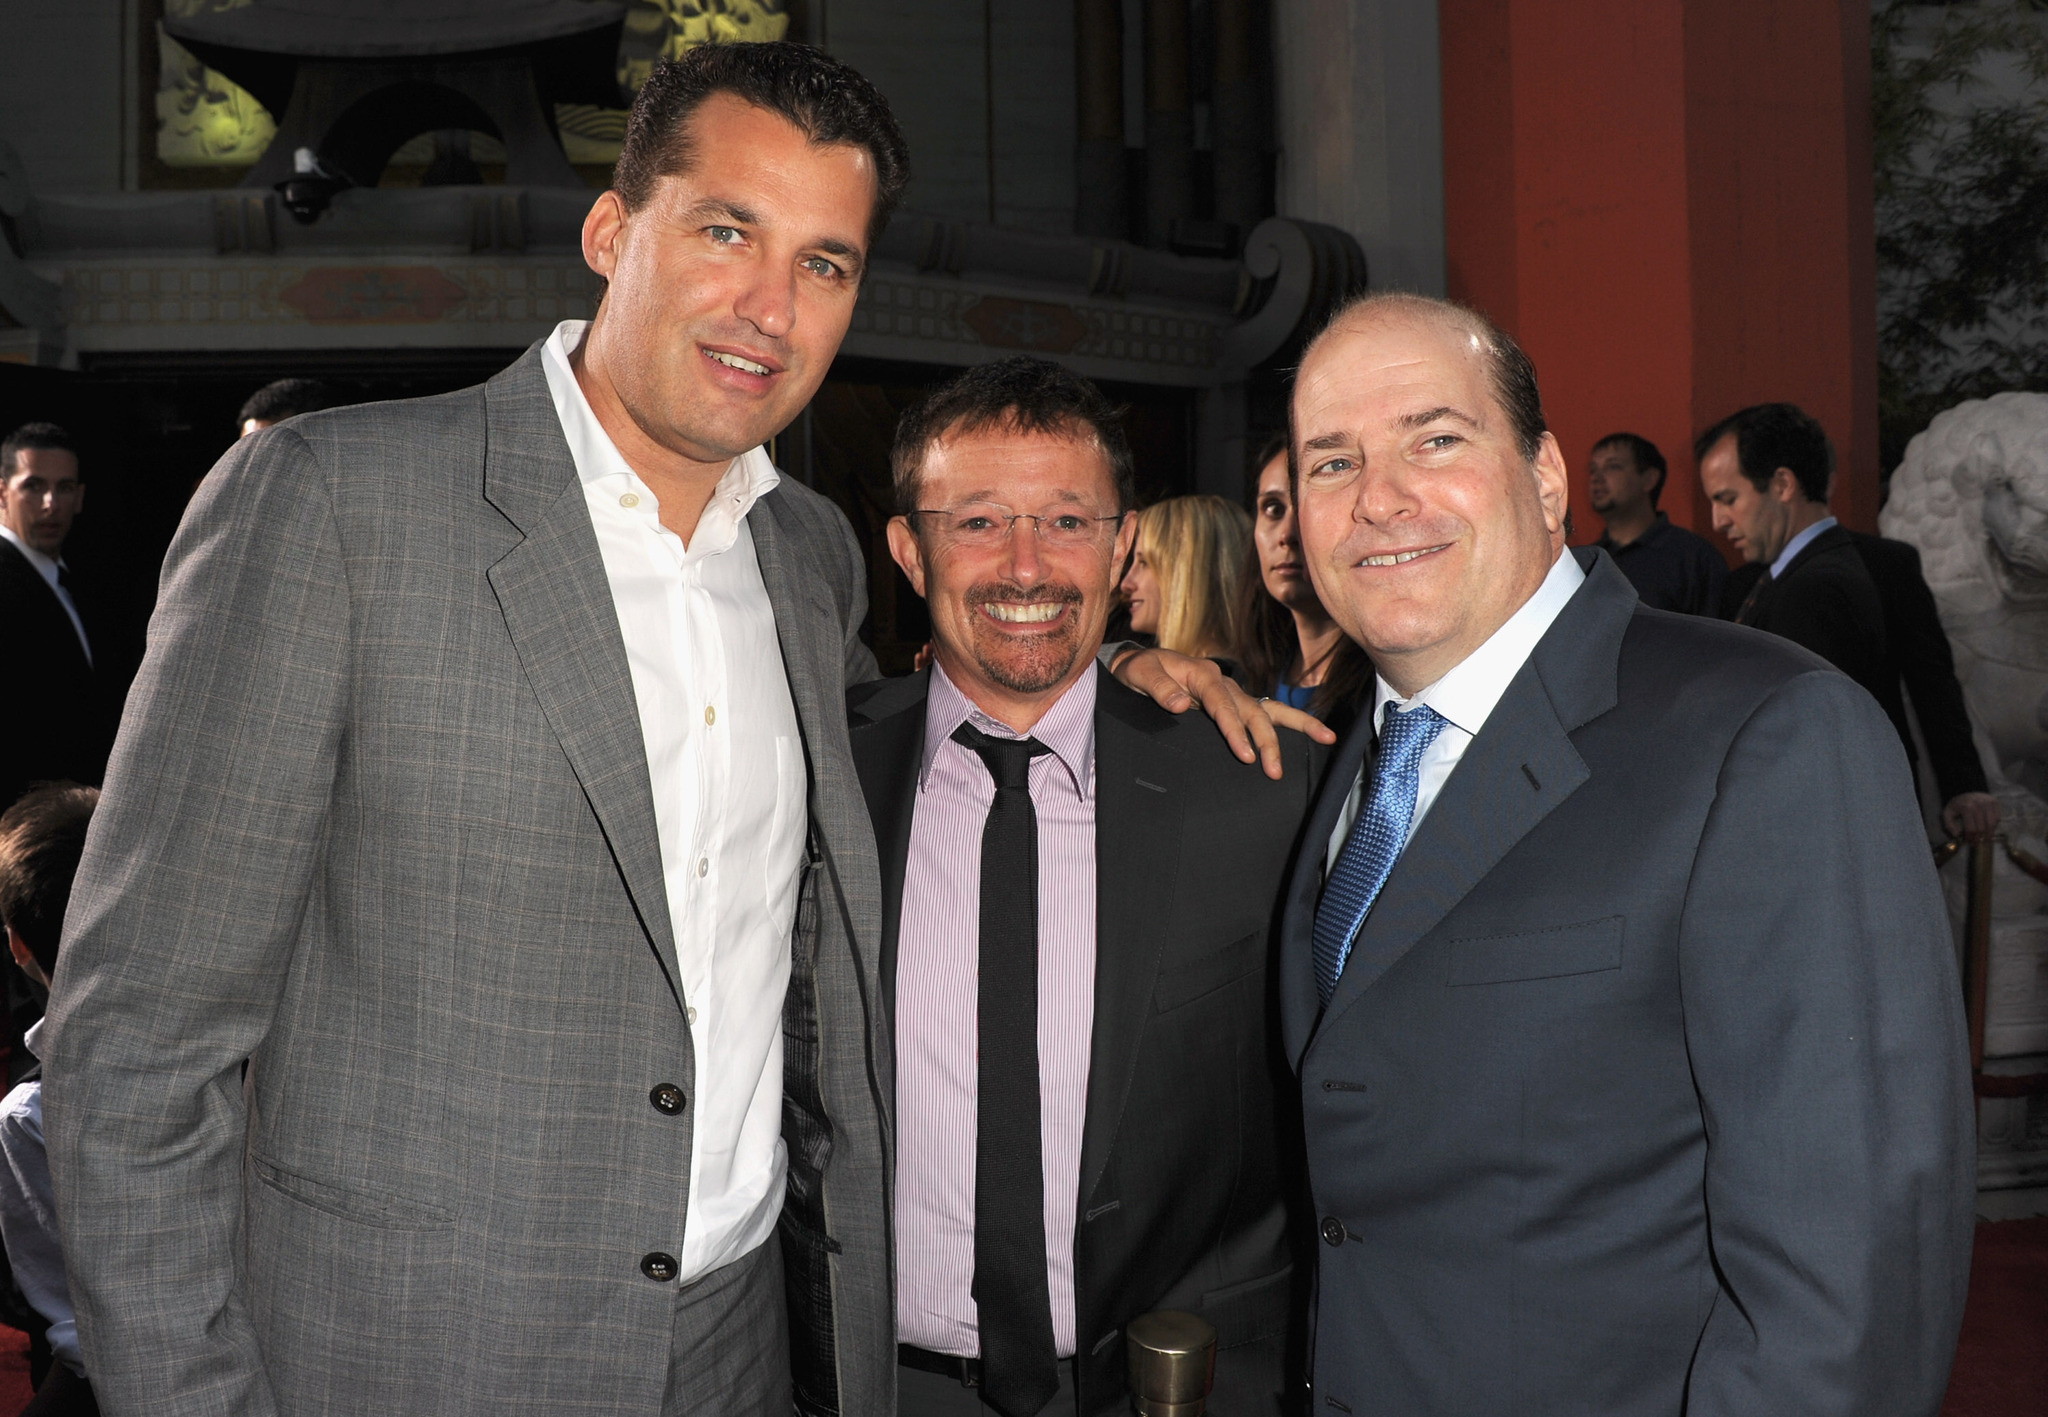 Jason Clark, Scott Stuber and John Jacobs at event of Tedis (2012)